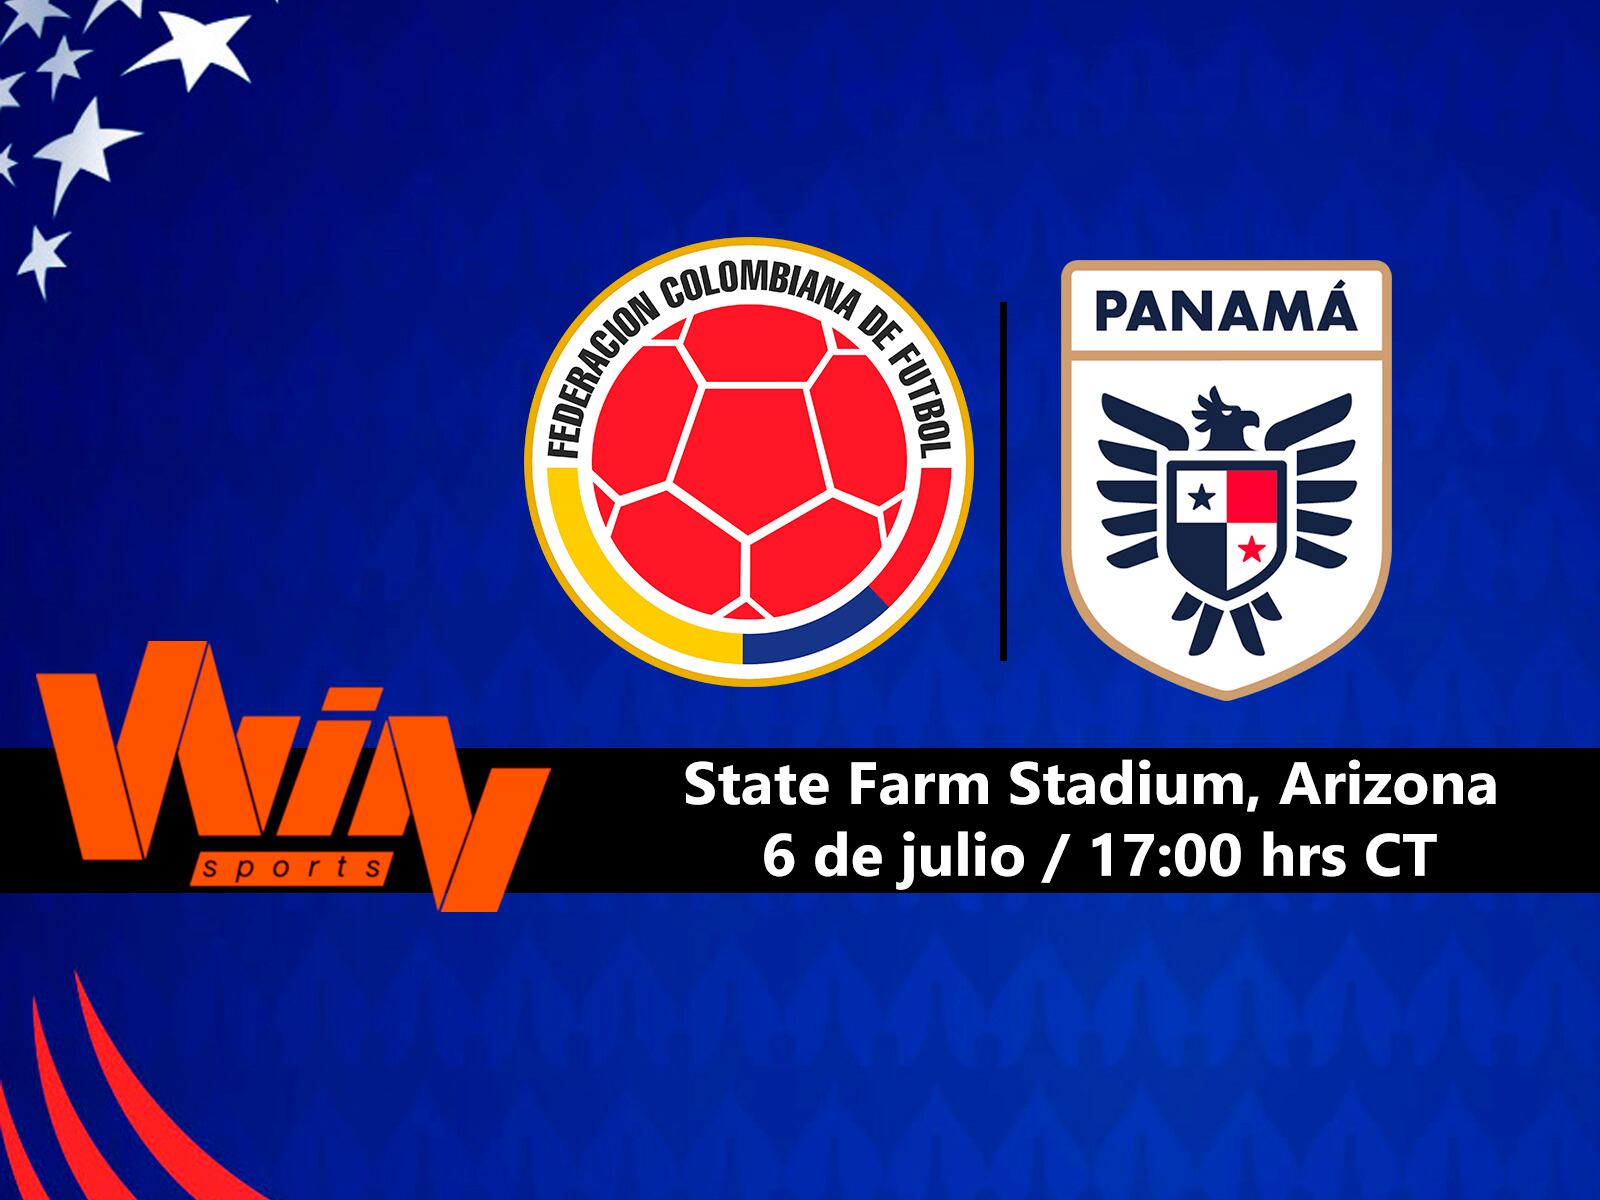 Win Sports EN VIVO - cómo seguir Colombia vs. Panamá por streaming online | futbol libre gratis online | futbol libre ver colombia panama en vivo | colombia vs panama en vivo online | futbol libre ver win sports en vivo